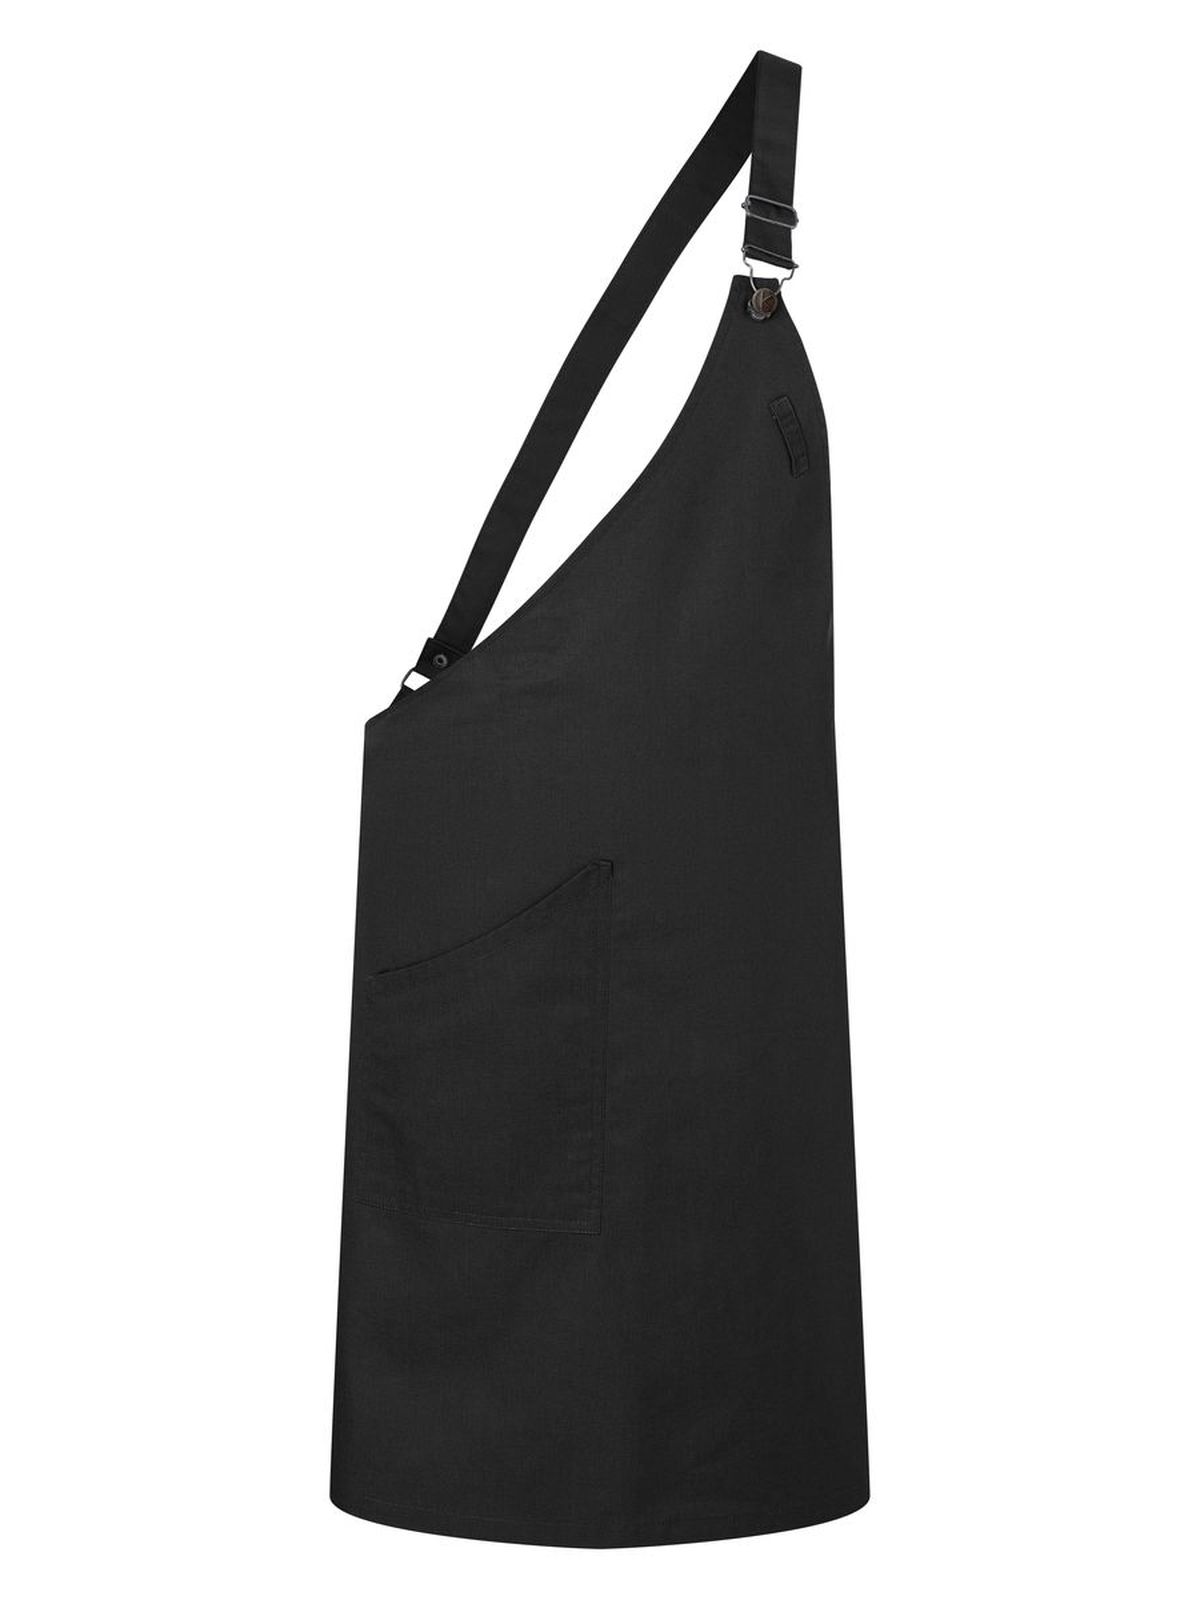 asymmetrical-bib-apron-with-pocket-black.webp